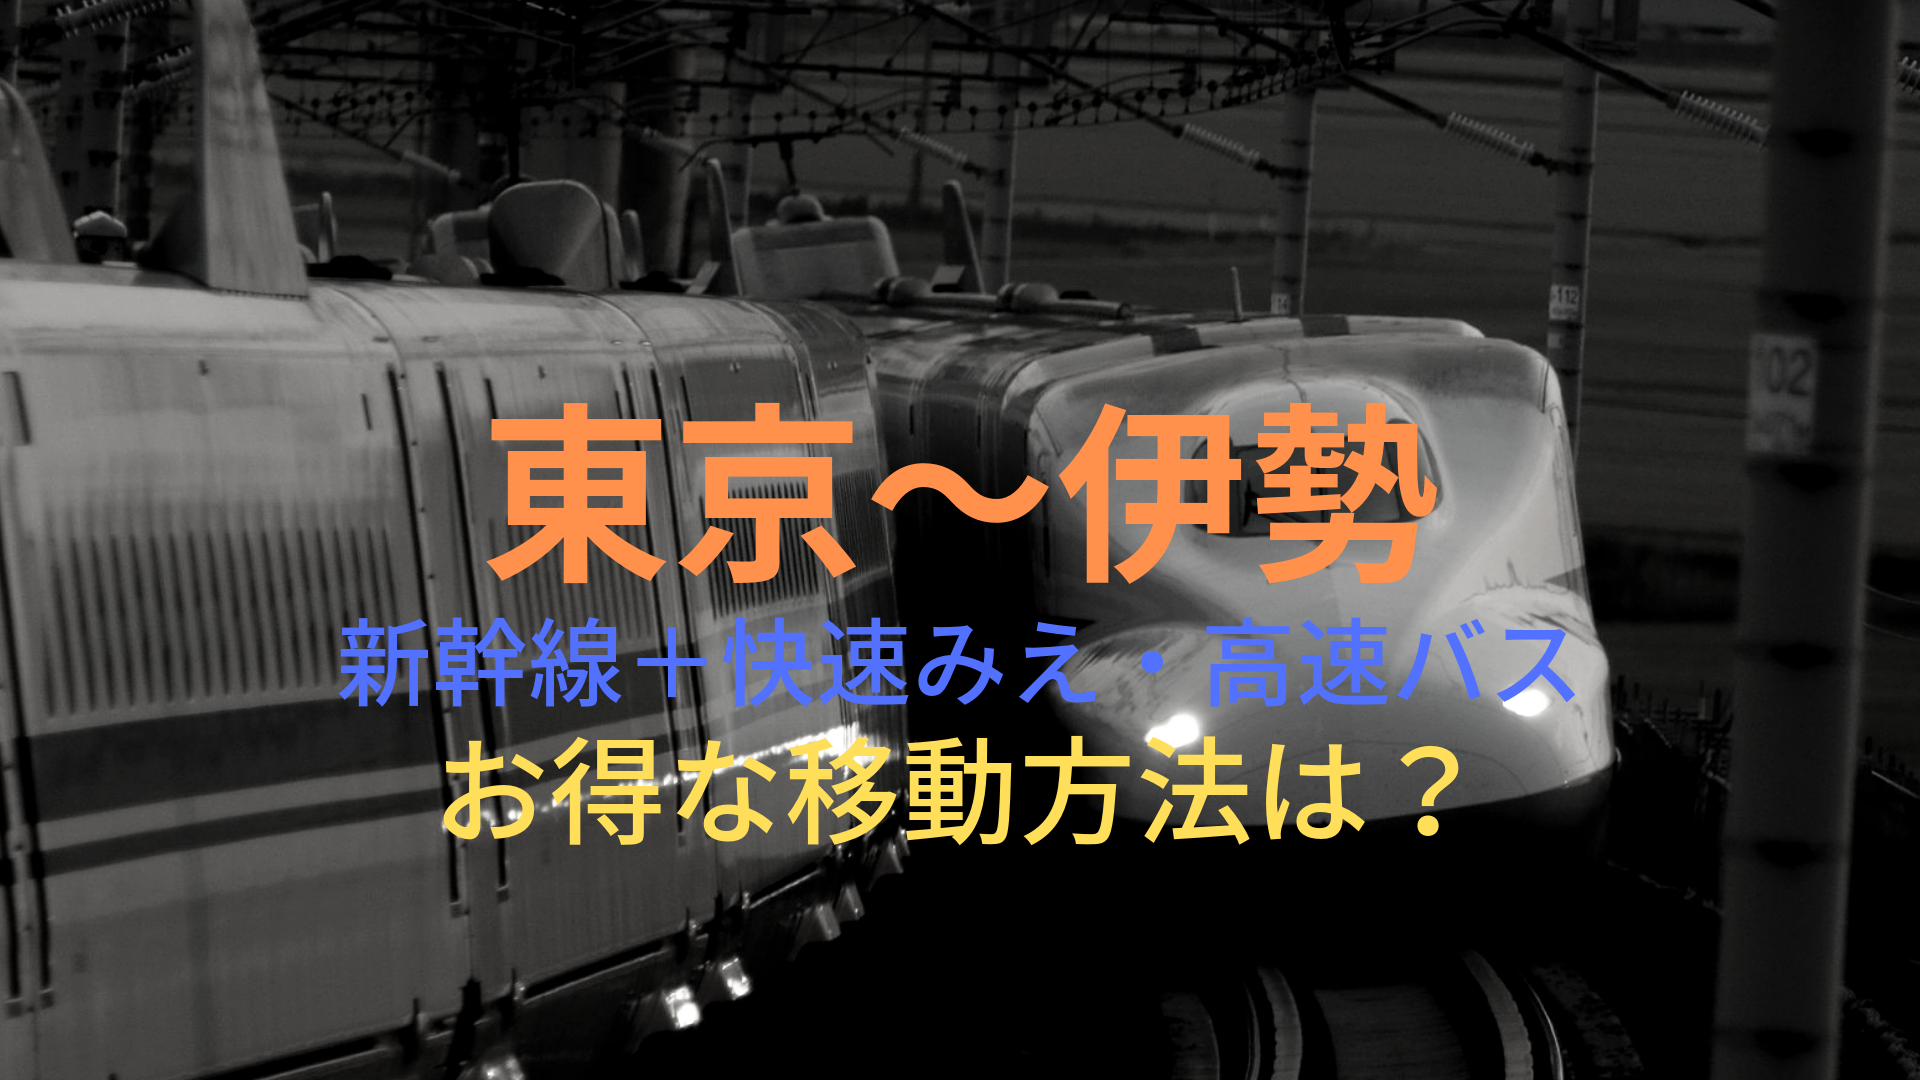 東京 伊勢 36円 格安で移動する方法は 新幹線 快速みえ 高速バスをそれぞれ比較 ばしたく交通